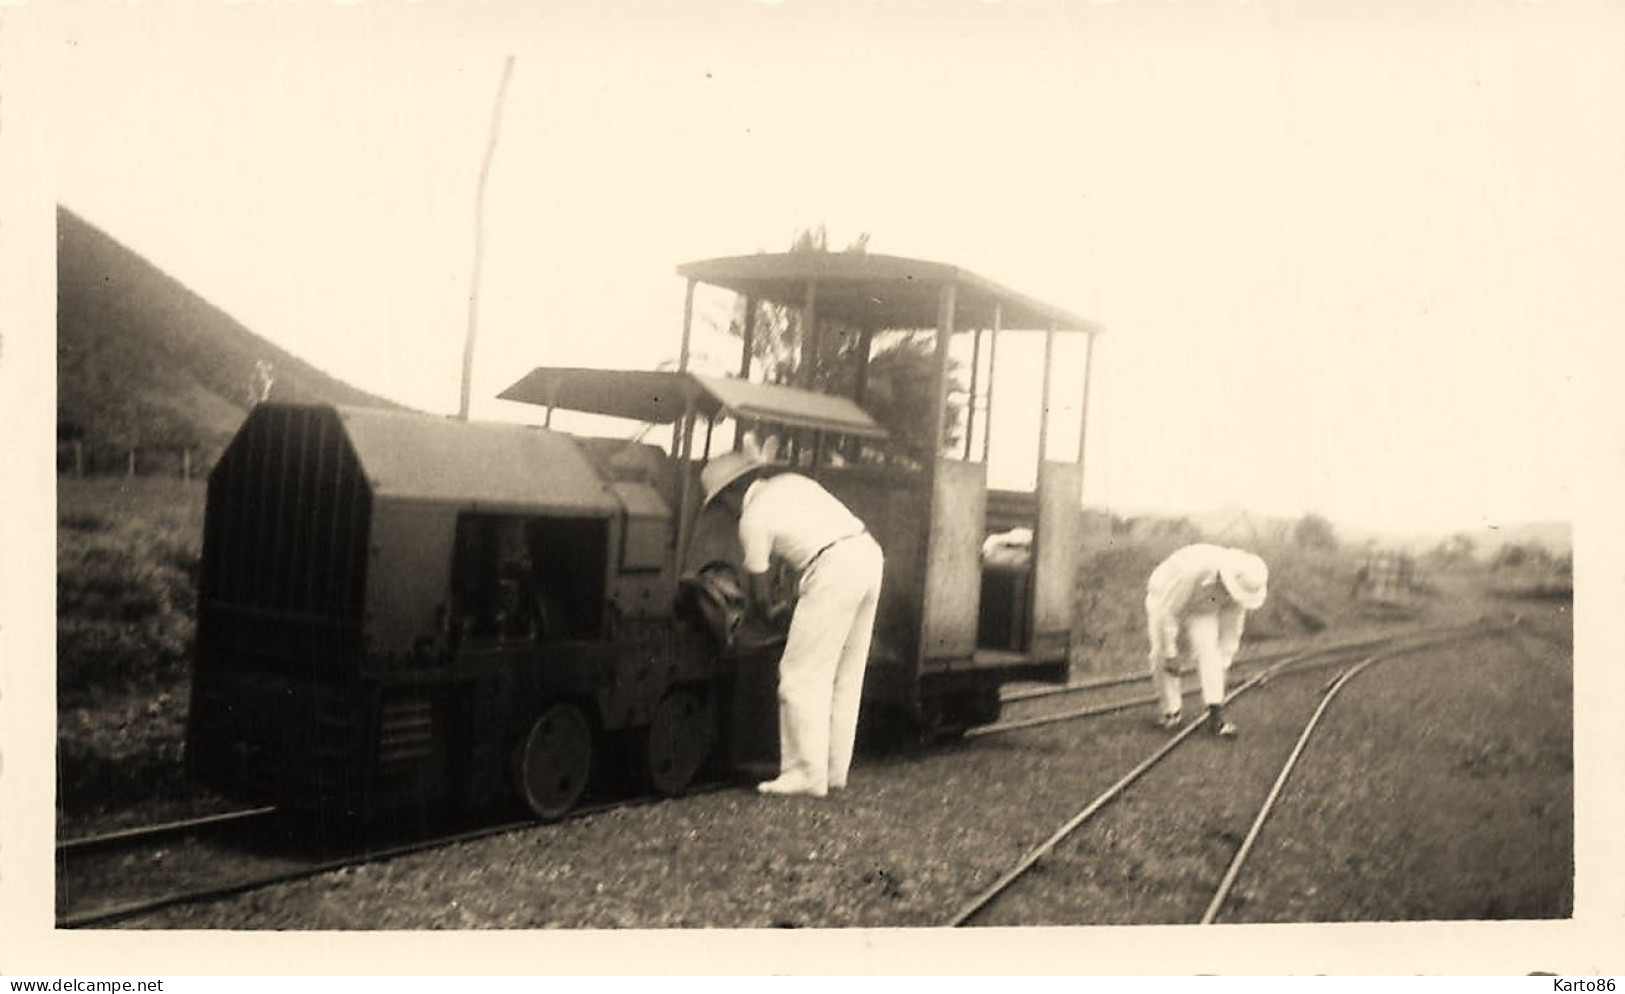 Nouvelle Calédonie * Train Machine Locomotive Ligne Chemin De Fer , Transport Canne à Sucre ? *photo Ancienne 11.2x6.8cm - Nouvelle Calédonie